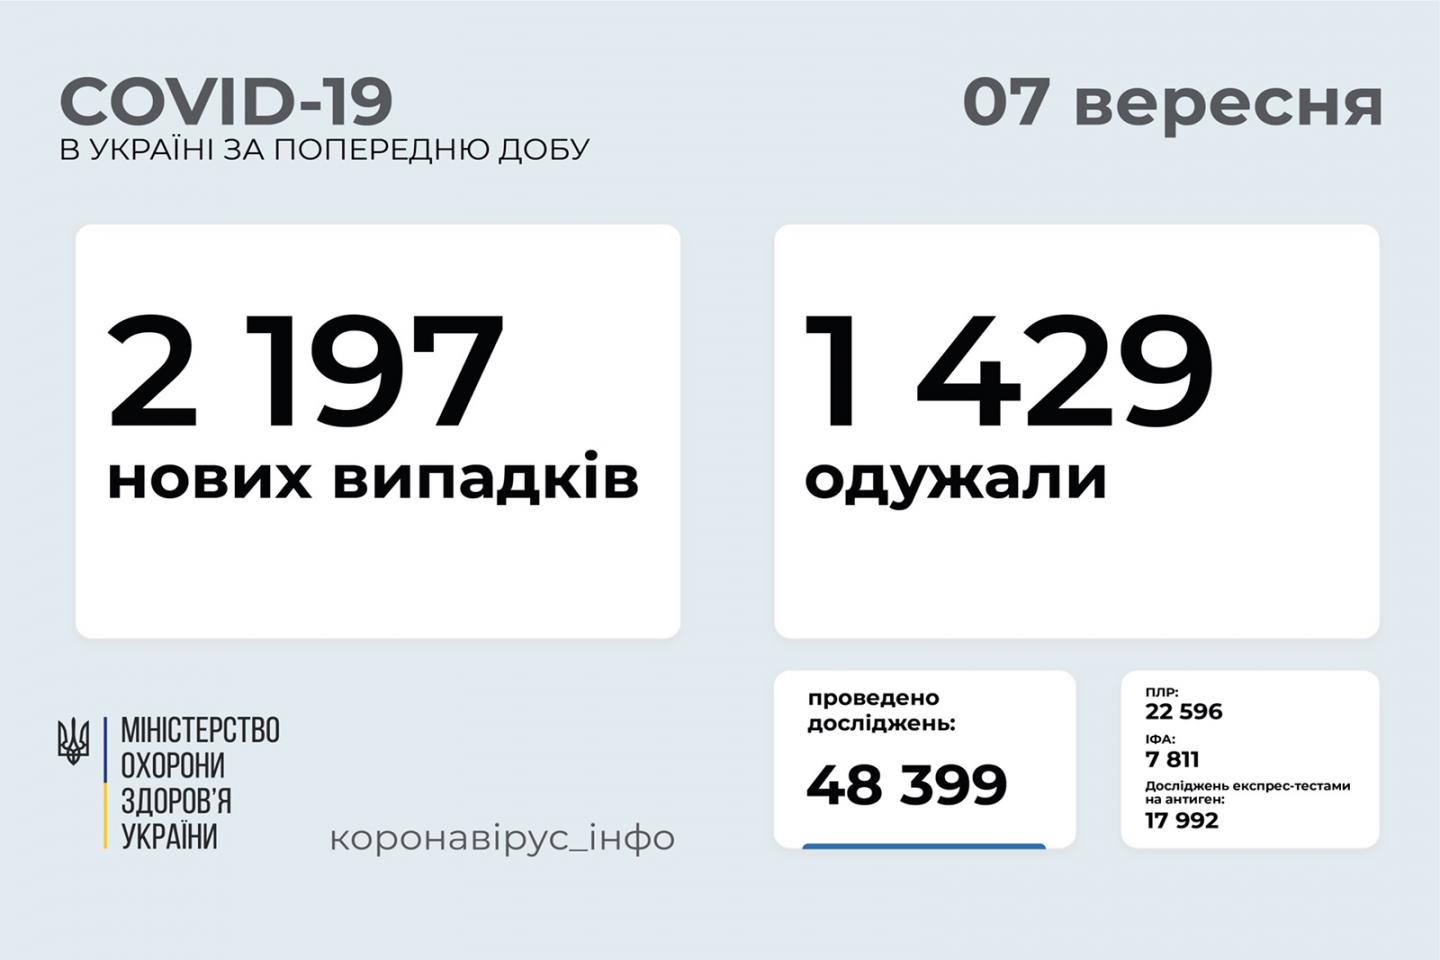 http://dunrada.gov.ua/uploadfile/archive_news/2021/09/07/2021-09-07_8499/images/images-76594.jpg